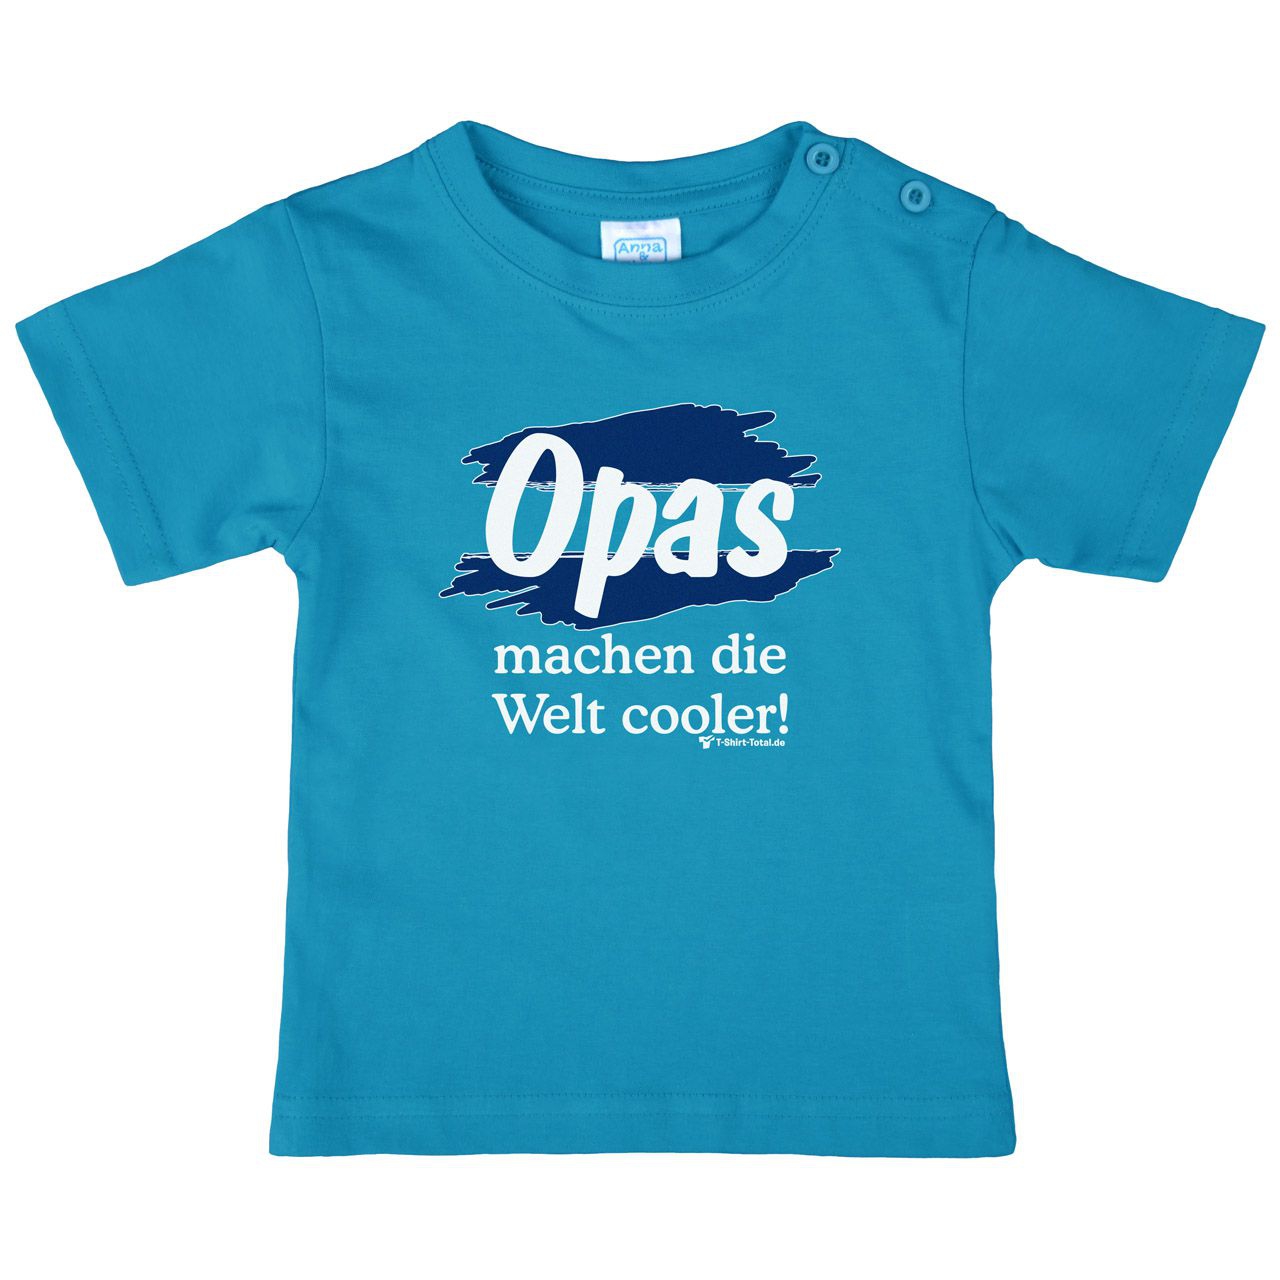 Welt cooler Opa Kinder T-Shirt türkis 92